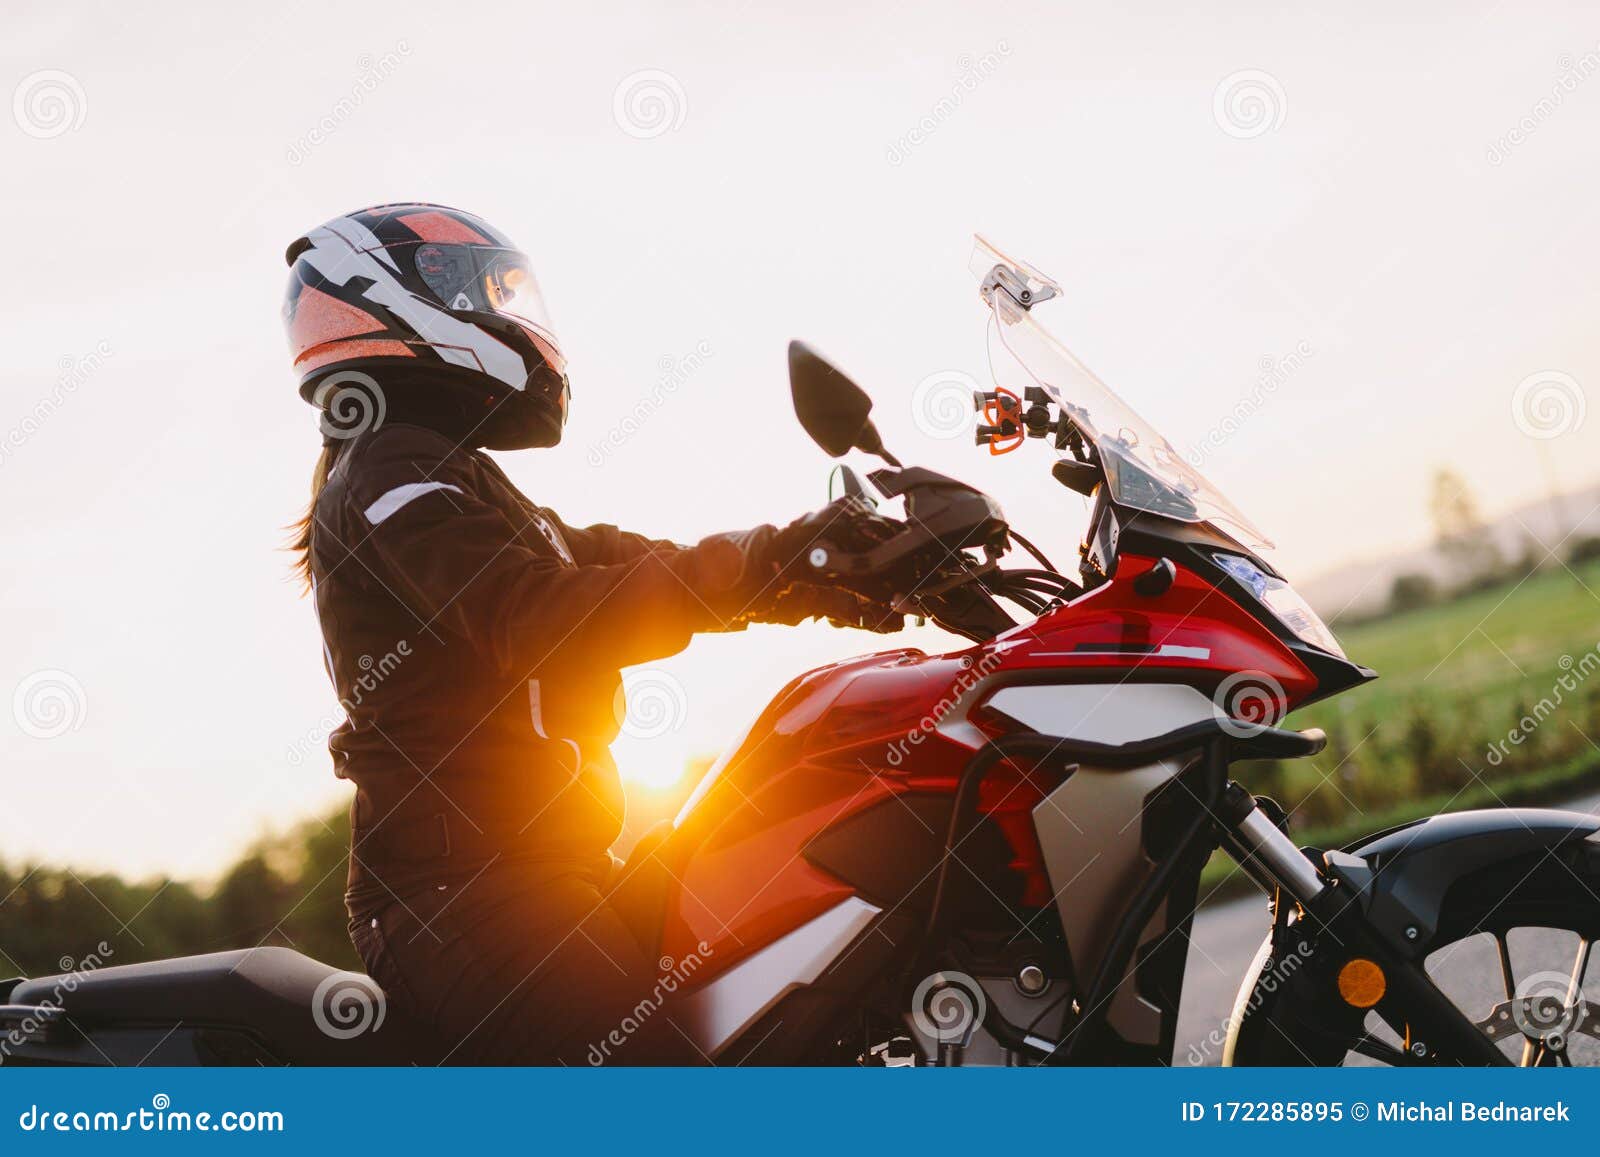 woman riding motobike at sunset.